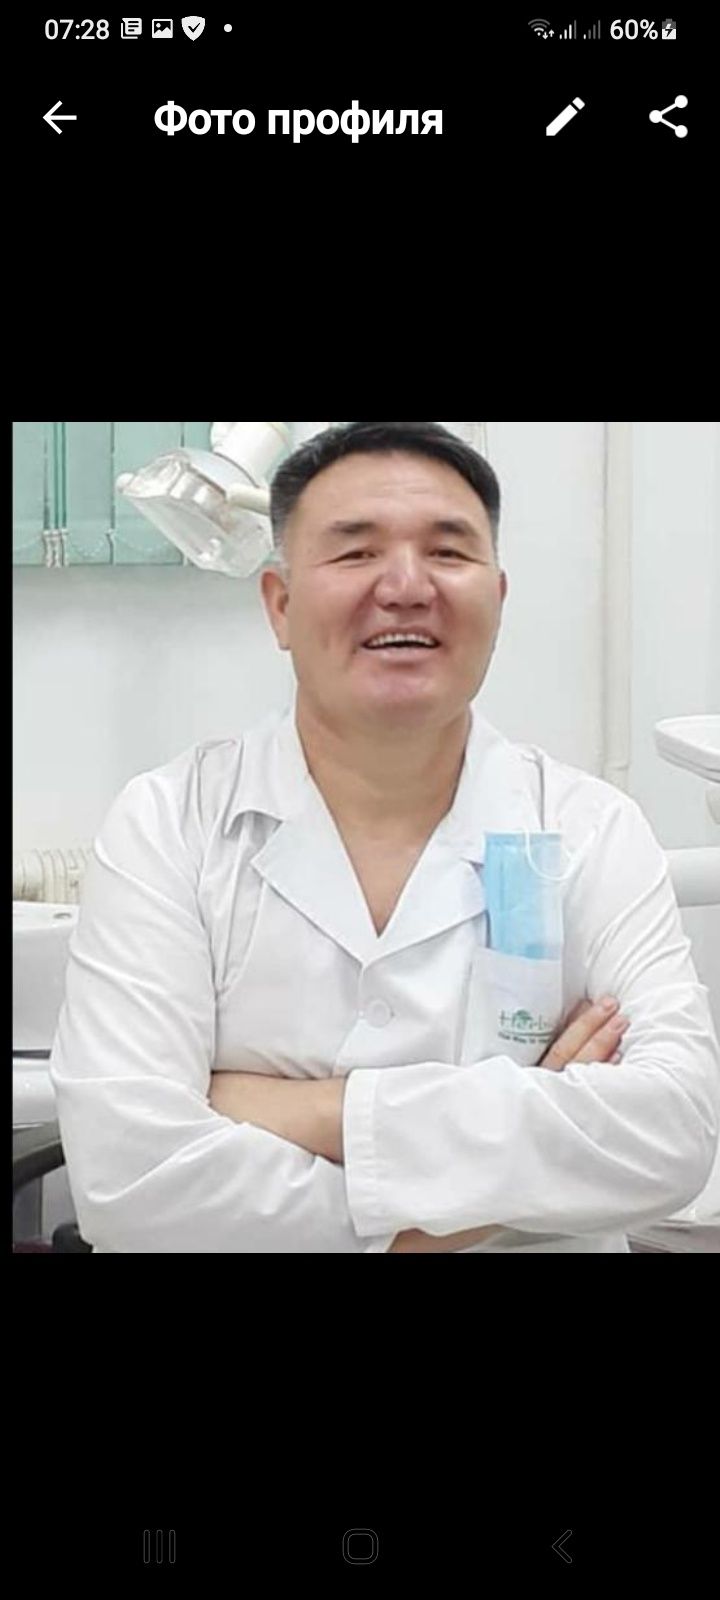 стоматология, зубной протезы немецкий